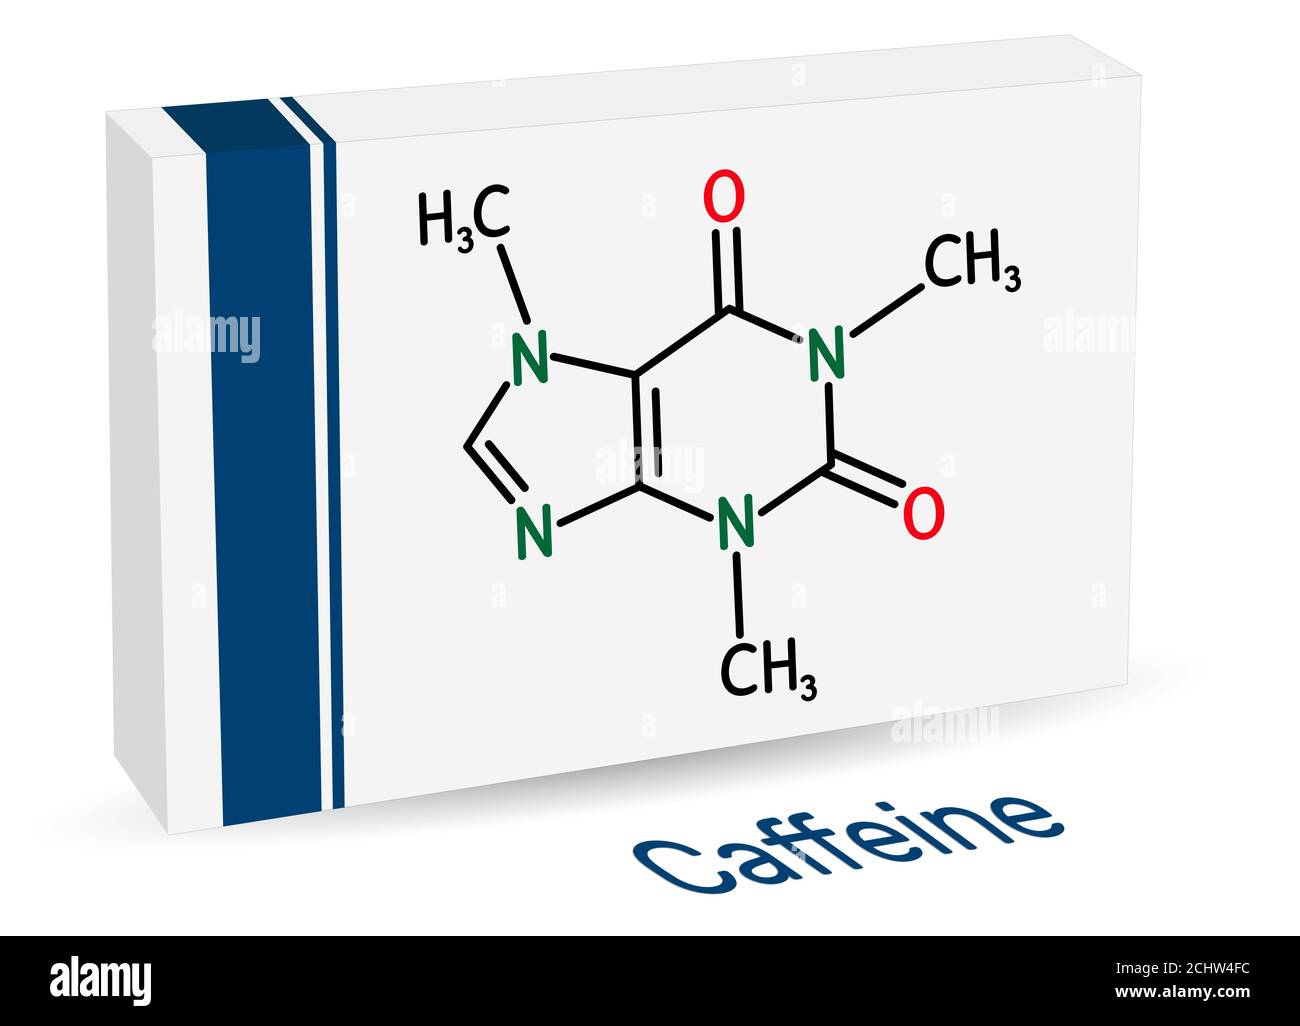 Caféine, alcaloïde purine, molécule de médicament psychoactif. Emballage en papier pour médicaments. Illustration Banque D'Images